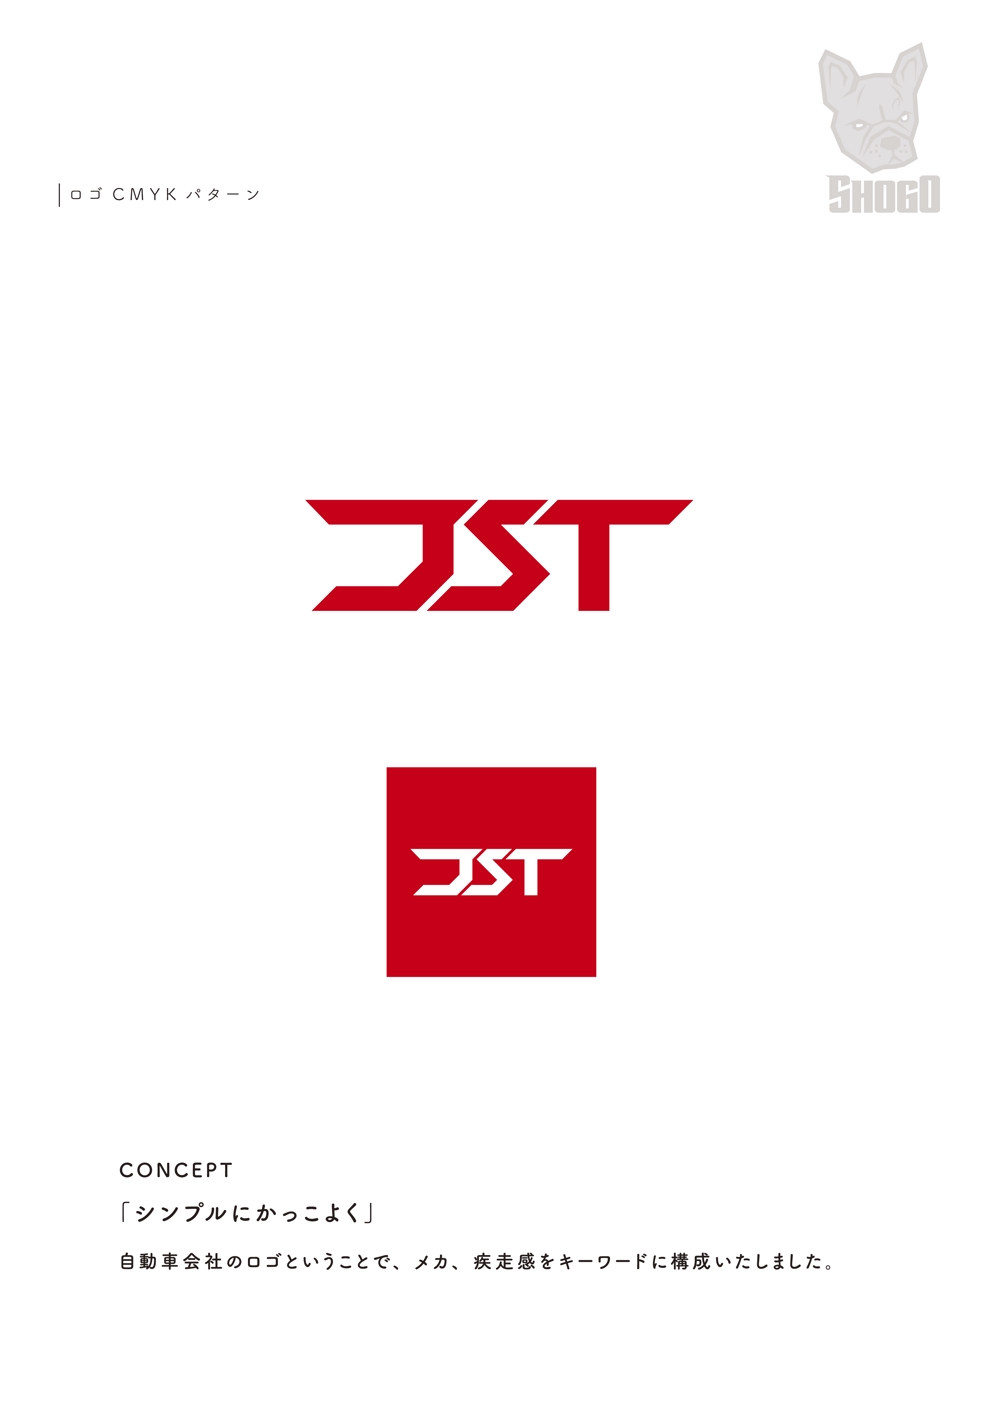 JST-01.jpg